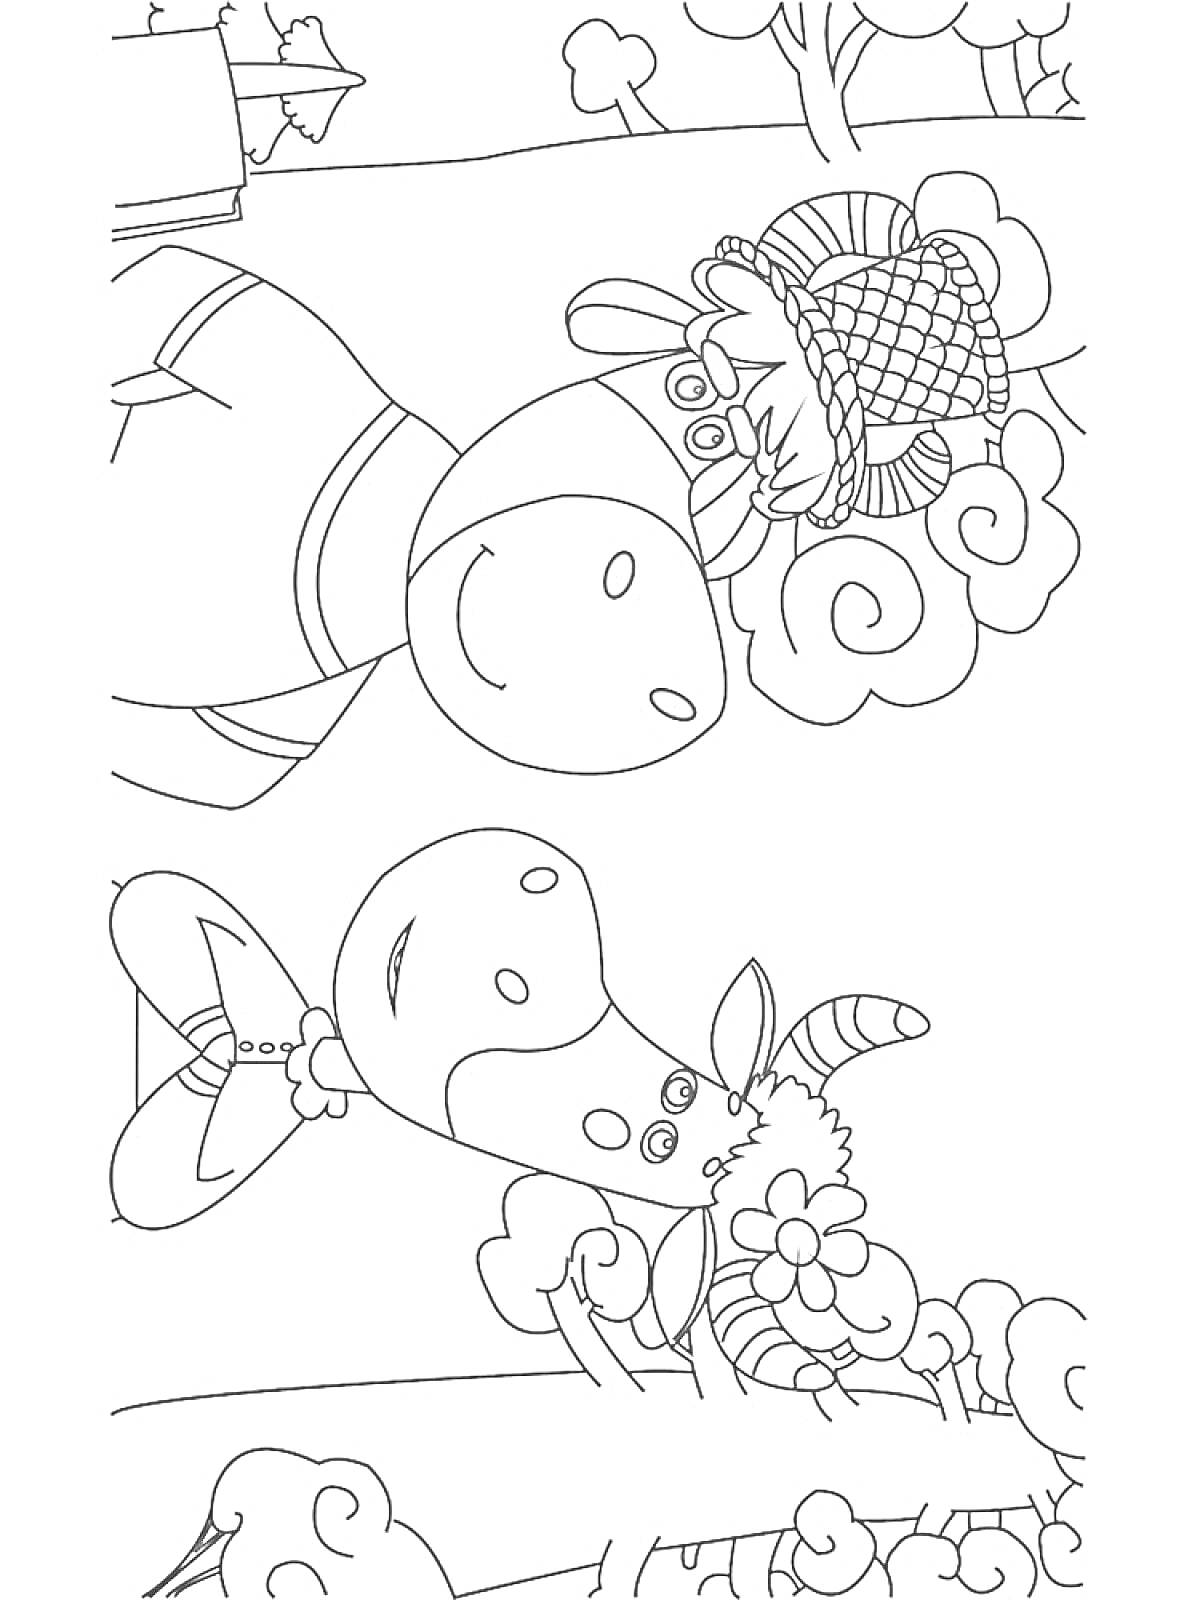 Раскраска Буренка Даша и баран на дереве с плетеной корзиной, Буренка Даша в платье и бантике